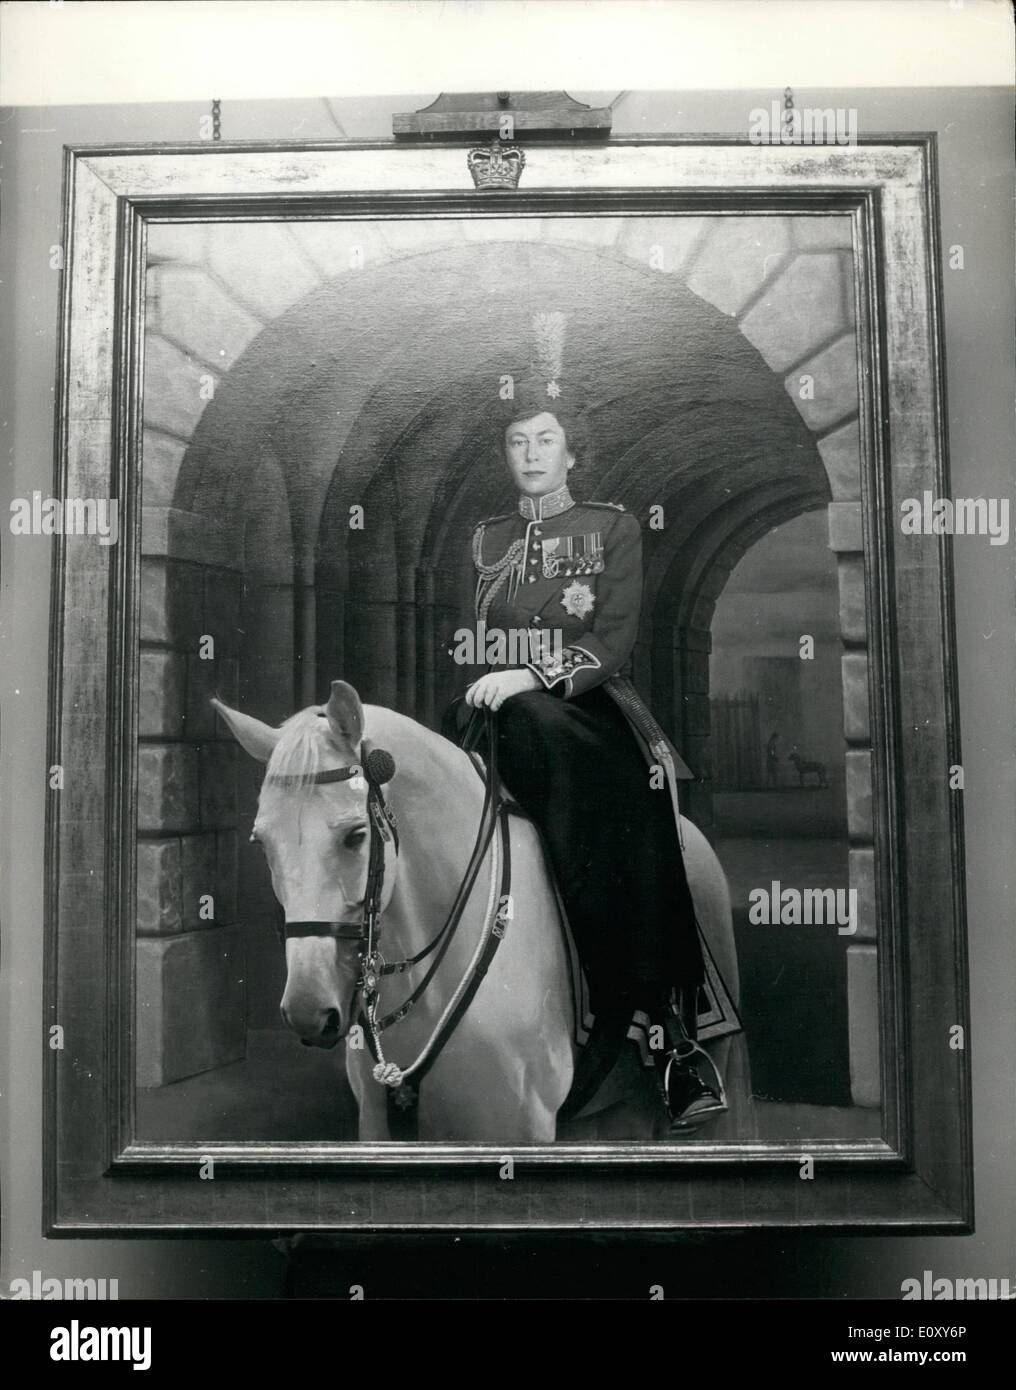 Avril 04, 1968 - Gardes irlandais présenté avec nouveau portrait de la Reine : une réception a eu lieu aujourd'hui au quartier général régimentaire de l'Irish Guards, Wellington Barracks, à voir le portrait de Sa Majesté la Reine par Timothy Whidborne. Cela montre Sa Majesté portant l'uniforme de Colonel en Chef Irish Guards, monté sur le cheval gris Metropolitan Polce '« docteur'', dans le contexte de l'arcade sur Horse Guards Parade. Ce travail a été construit à partir d'une série de croquis de la reine à partir de la cérémonie de la parade la couleur en 1966 et 1967, suivie par des études au Royal Mews Banque D'Images